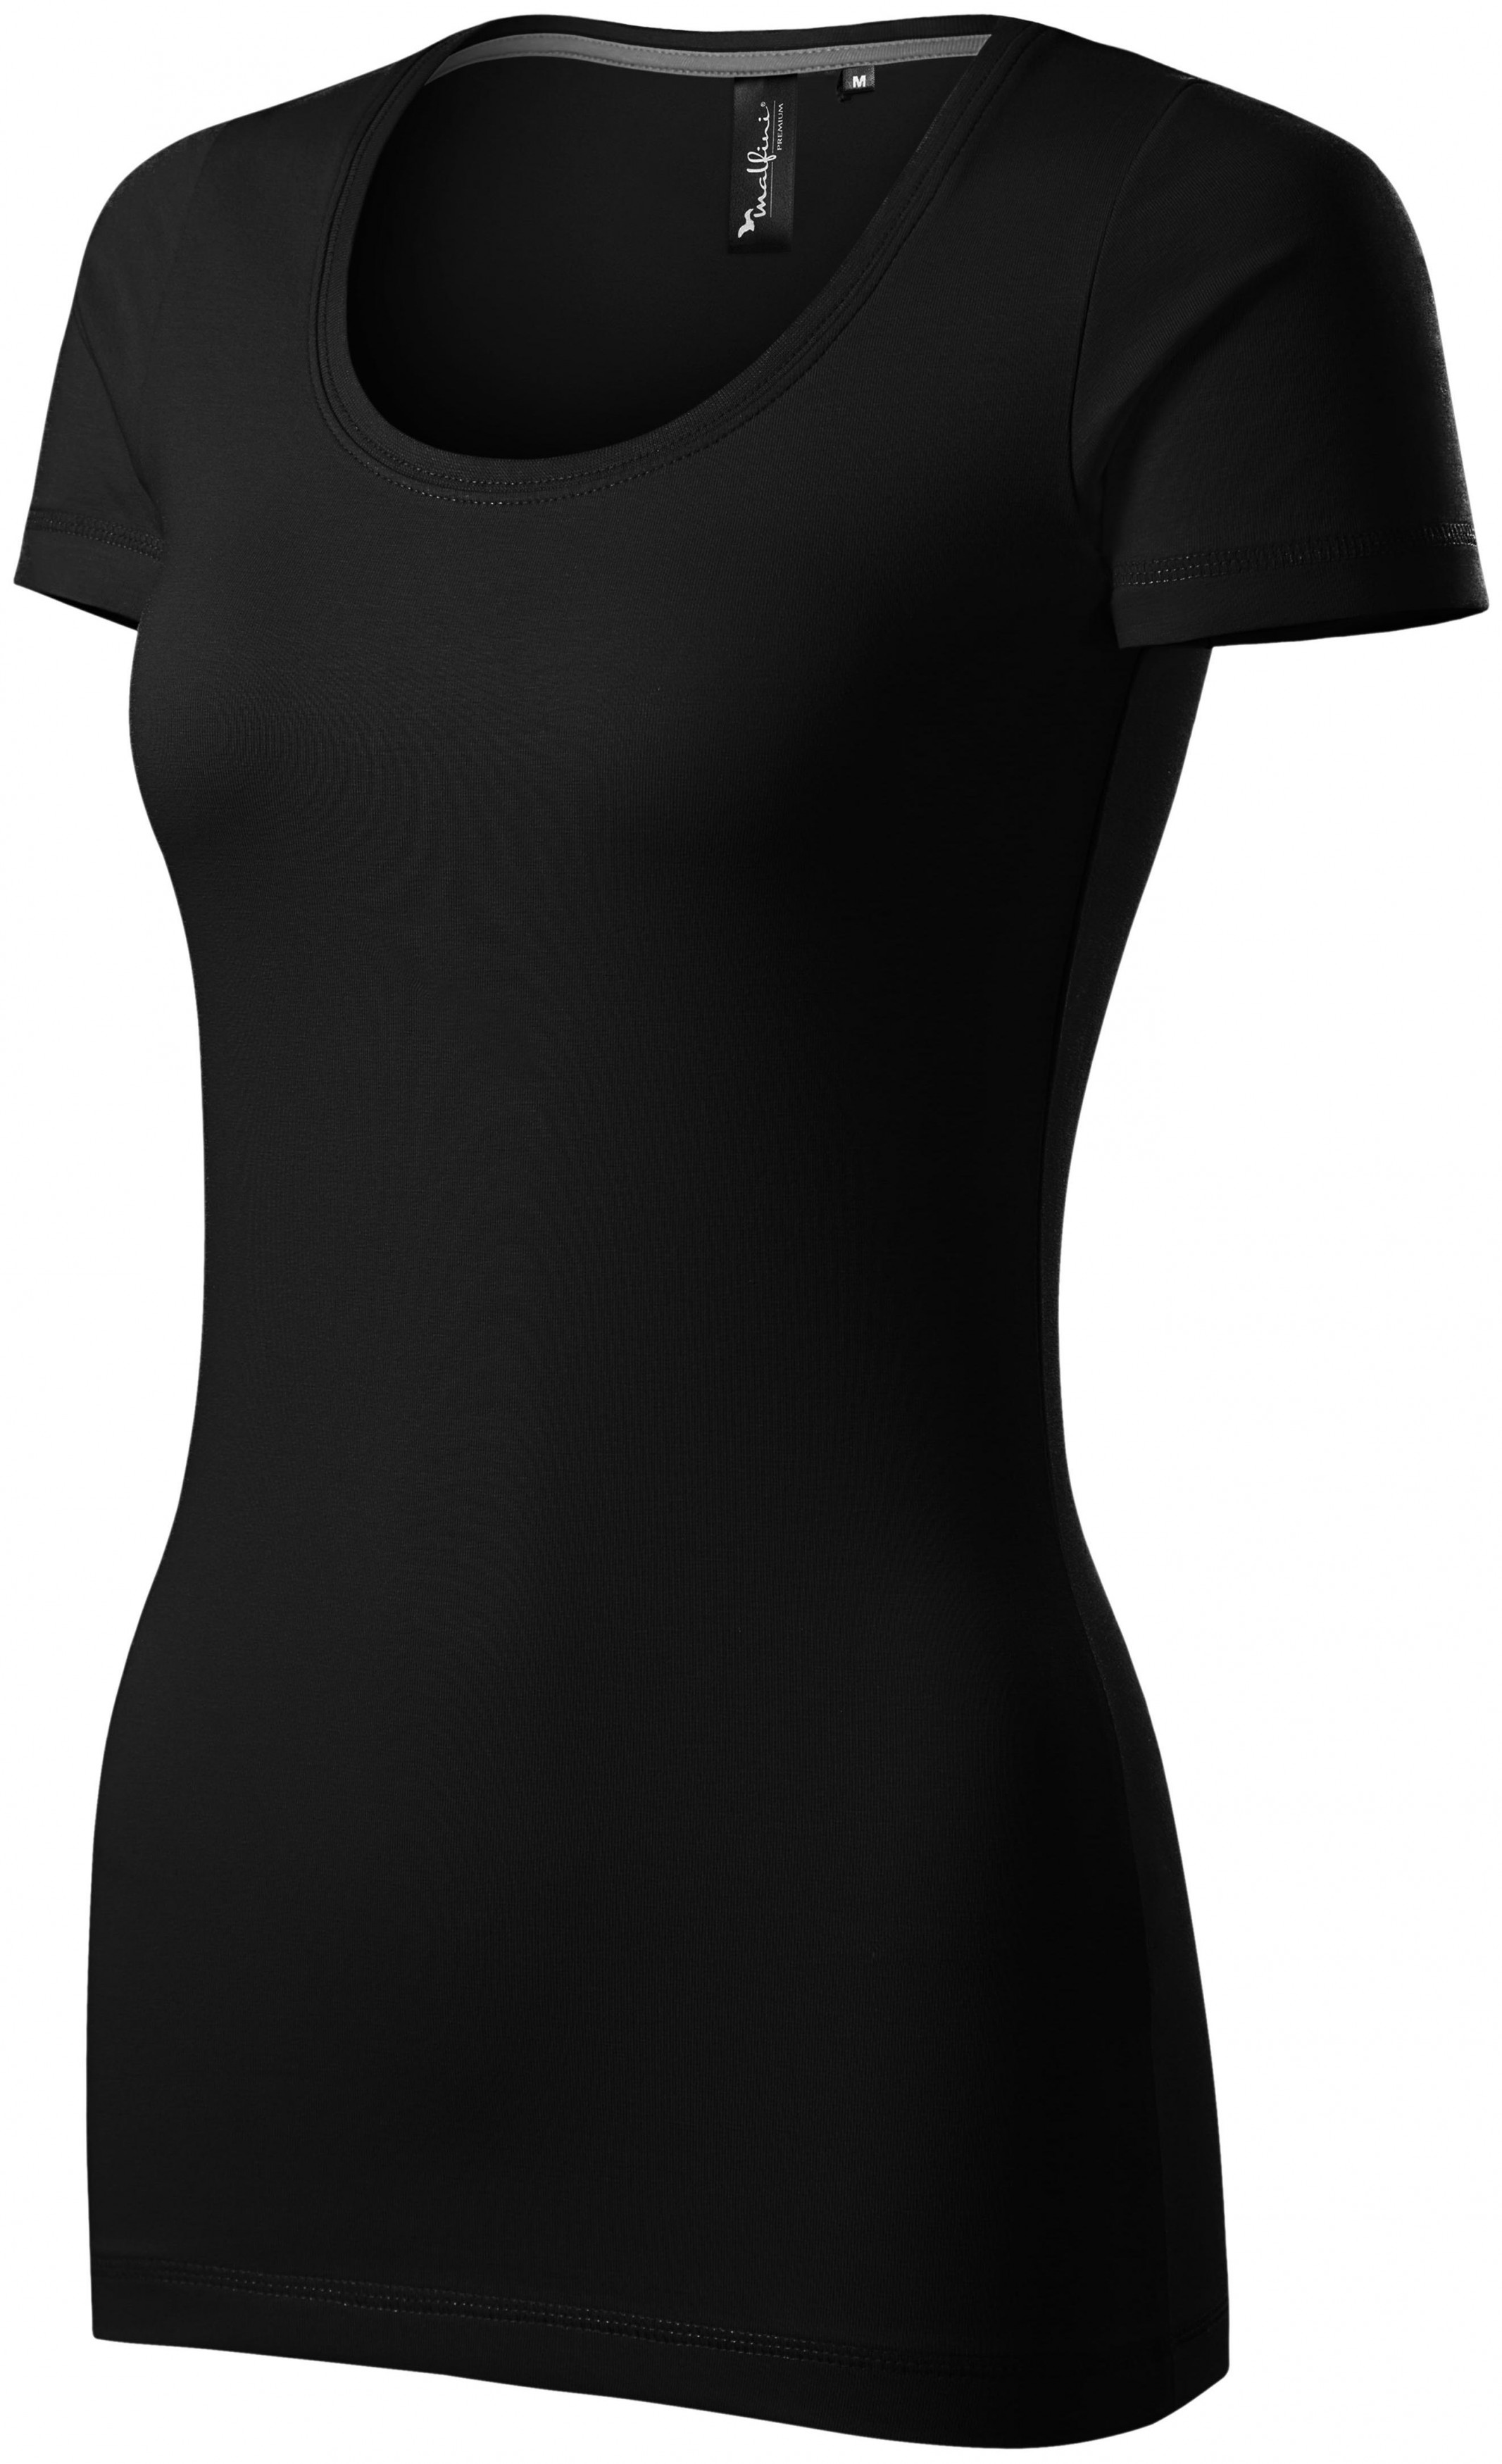 Dámske tričko s ozdobným prešitím, čierna, XL